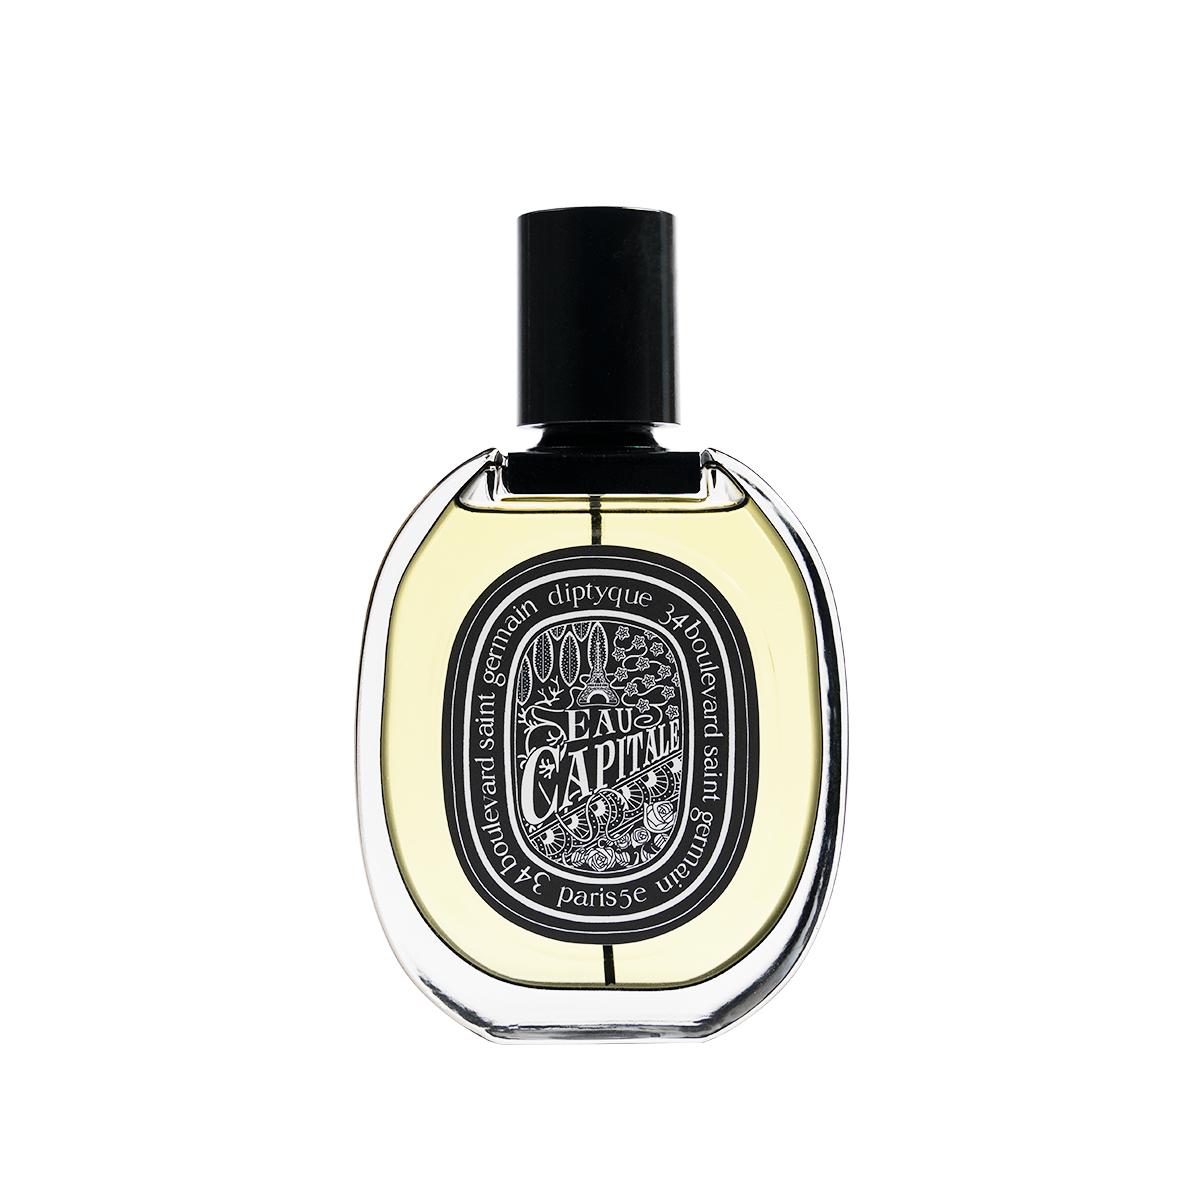 Primary image of Eau Capitale Eau De Parfum